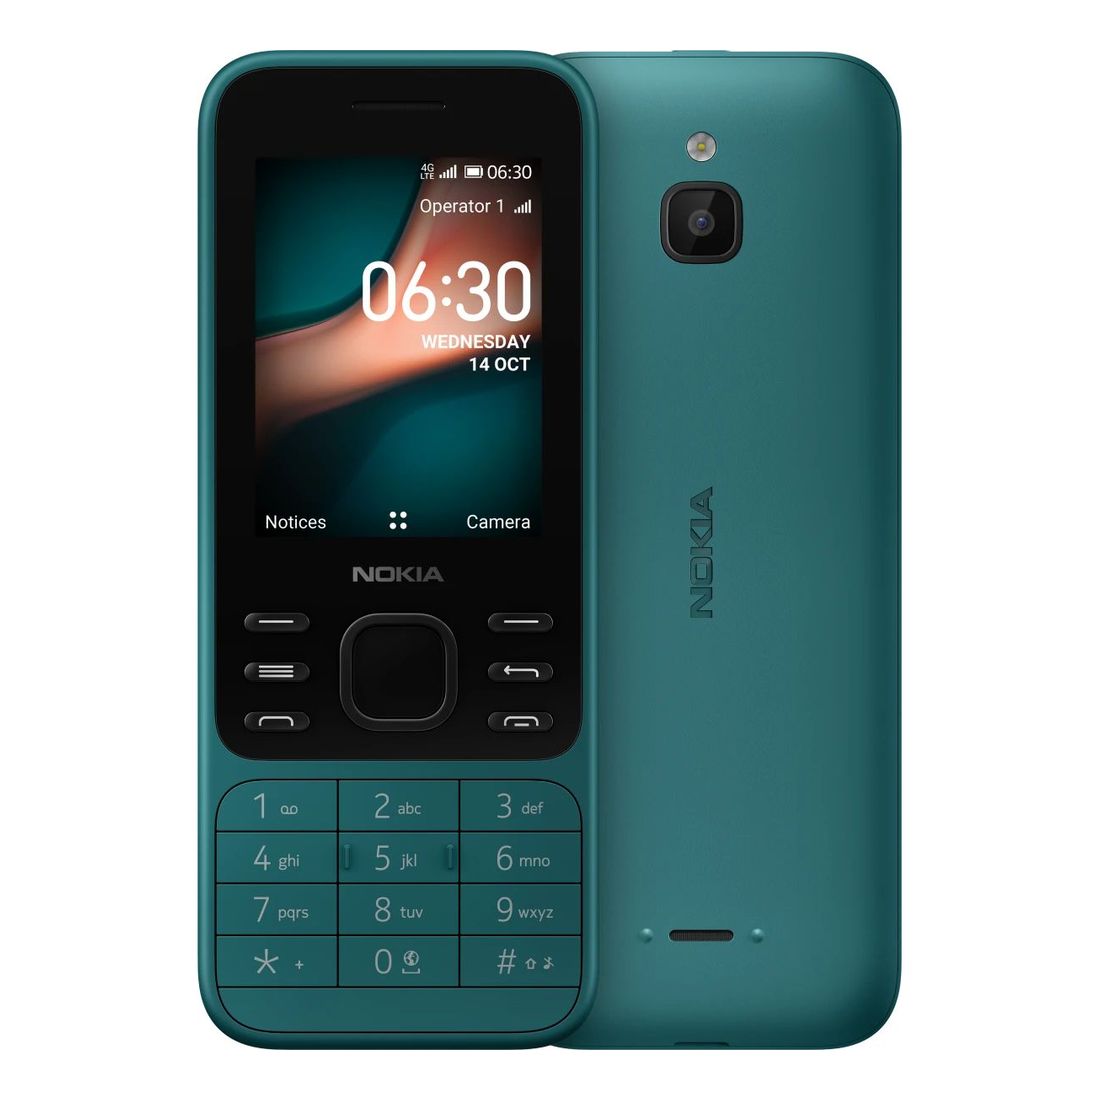 Nokia 6300 4G TA-1287 Mobile Phone 512MB/4GB Cyan Green